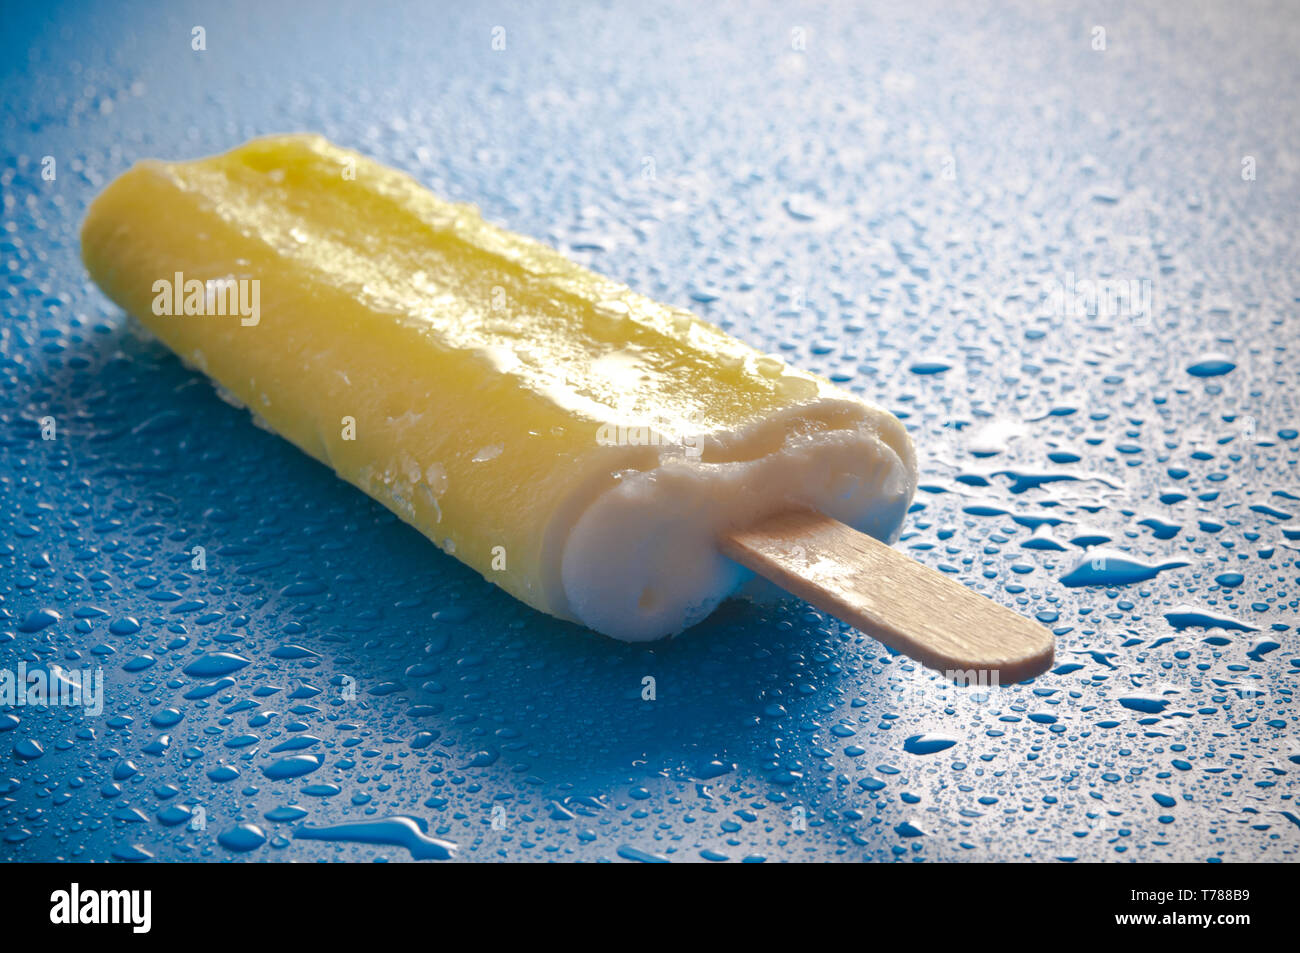 Amarillo hielo o hielo lolly pop sobre un fondo azul con gotas de agua Foto de stock